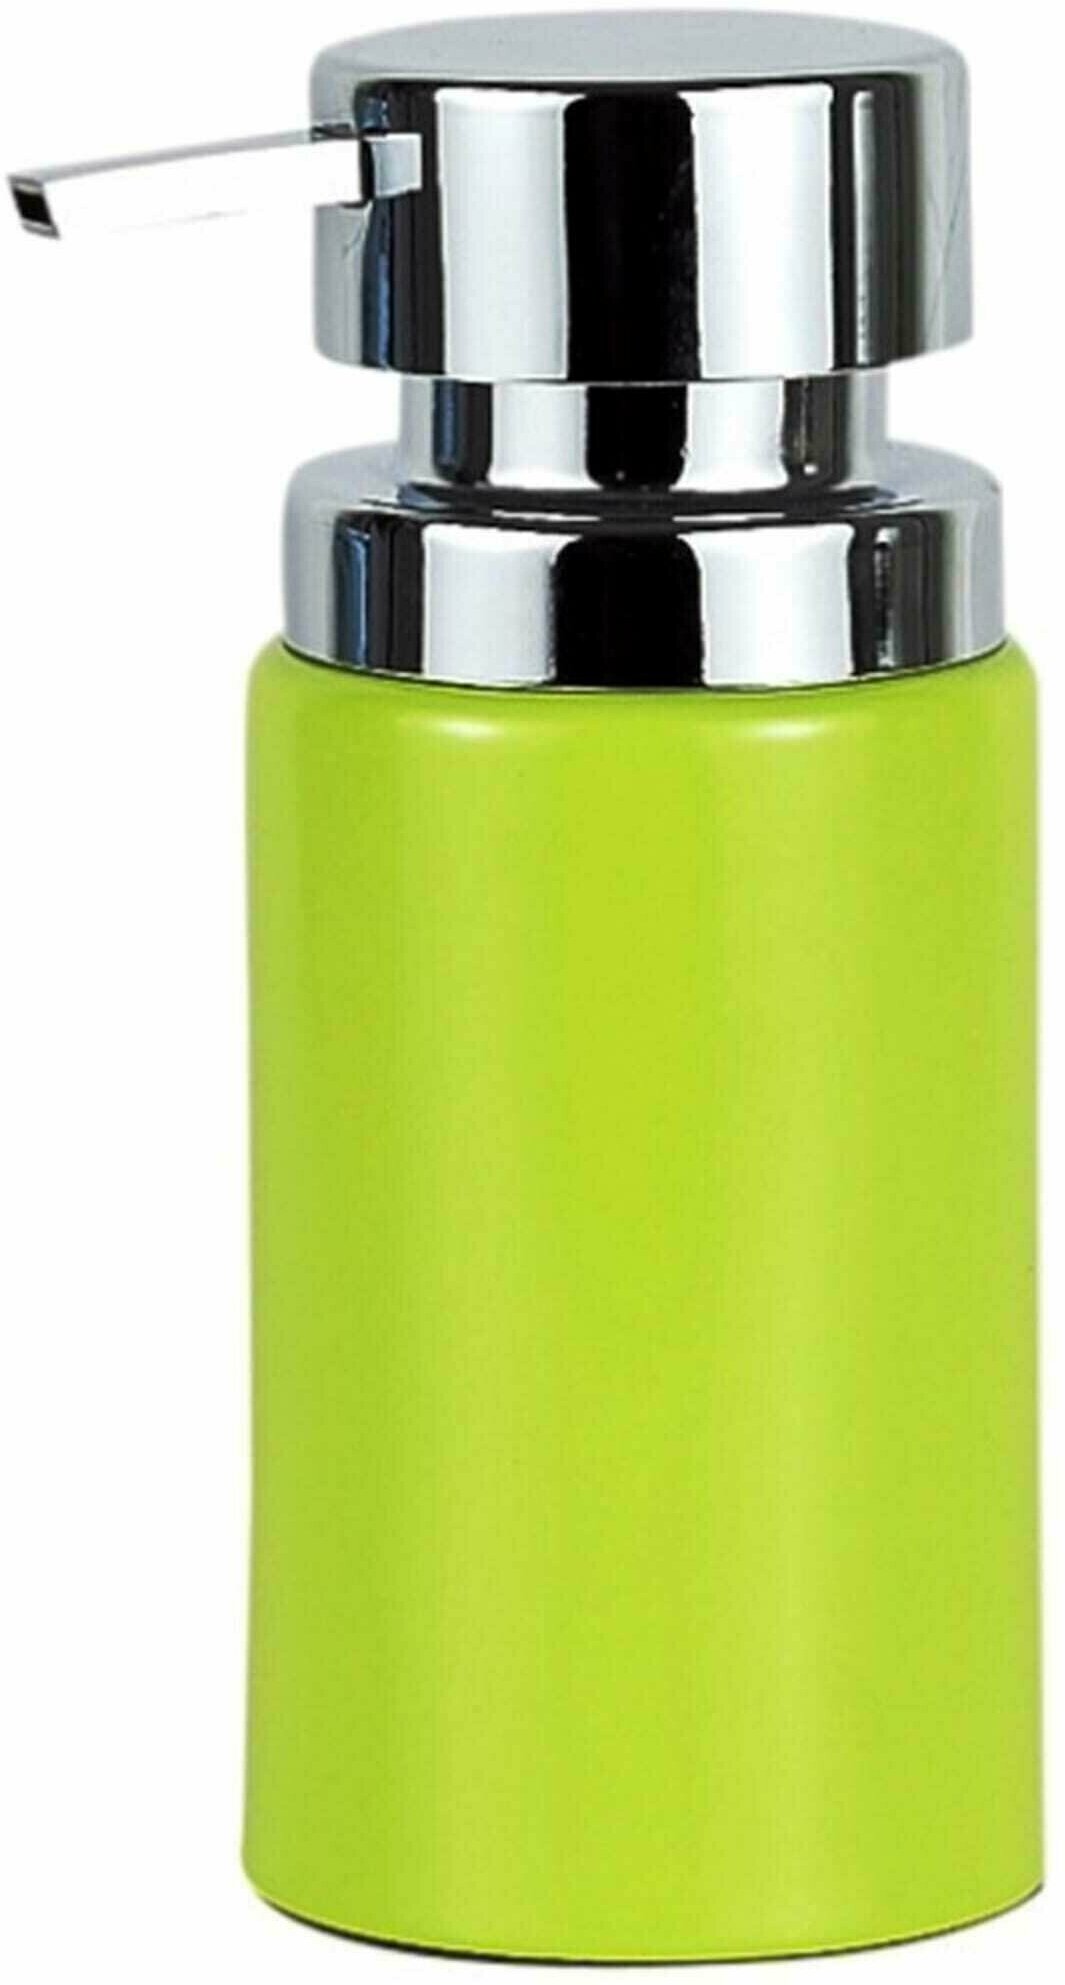 Кухонный дозатор для жидкого мыла Primanova D-13155 BORA, цвет зеленый, материал полимер, настольный, объем 250 мл, размер 7x7x16,2 см